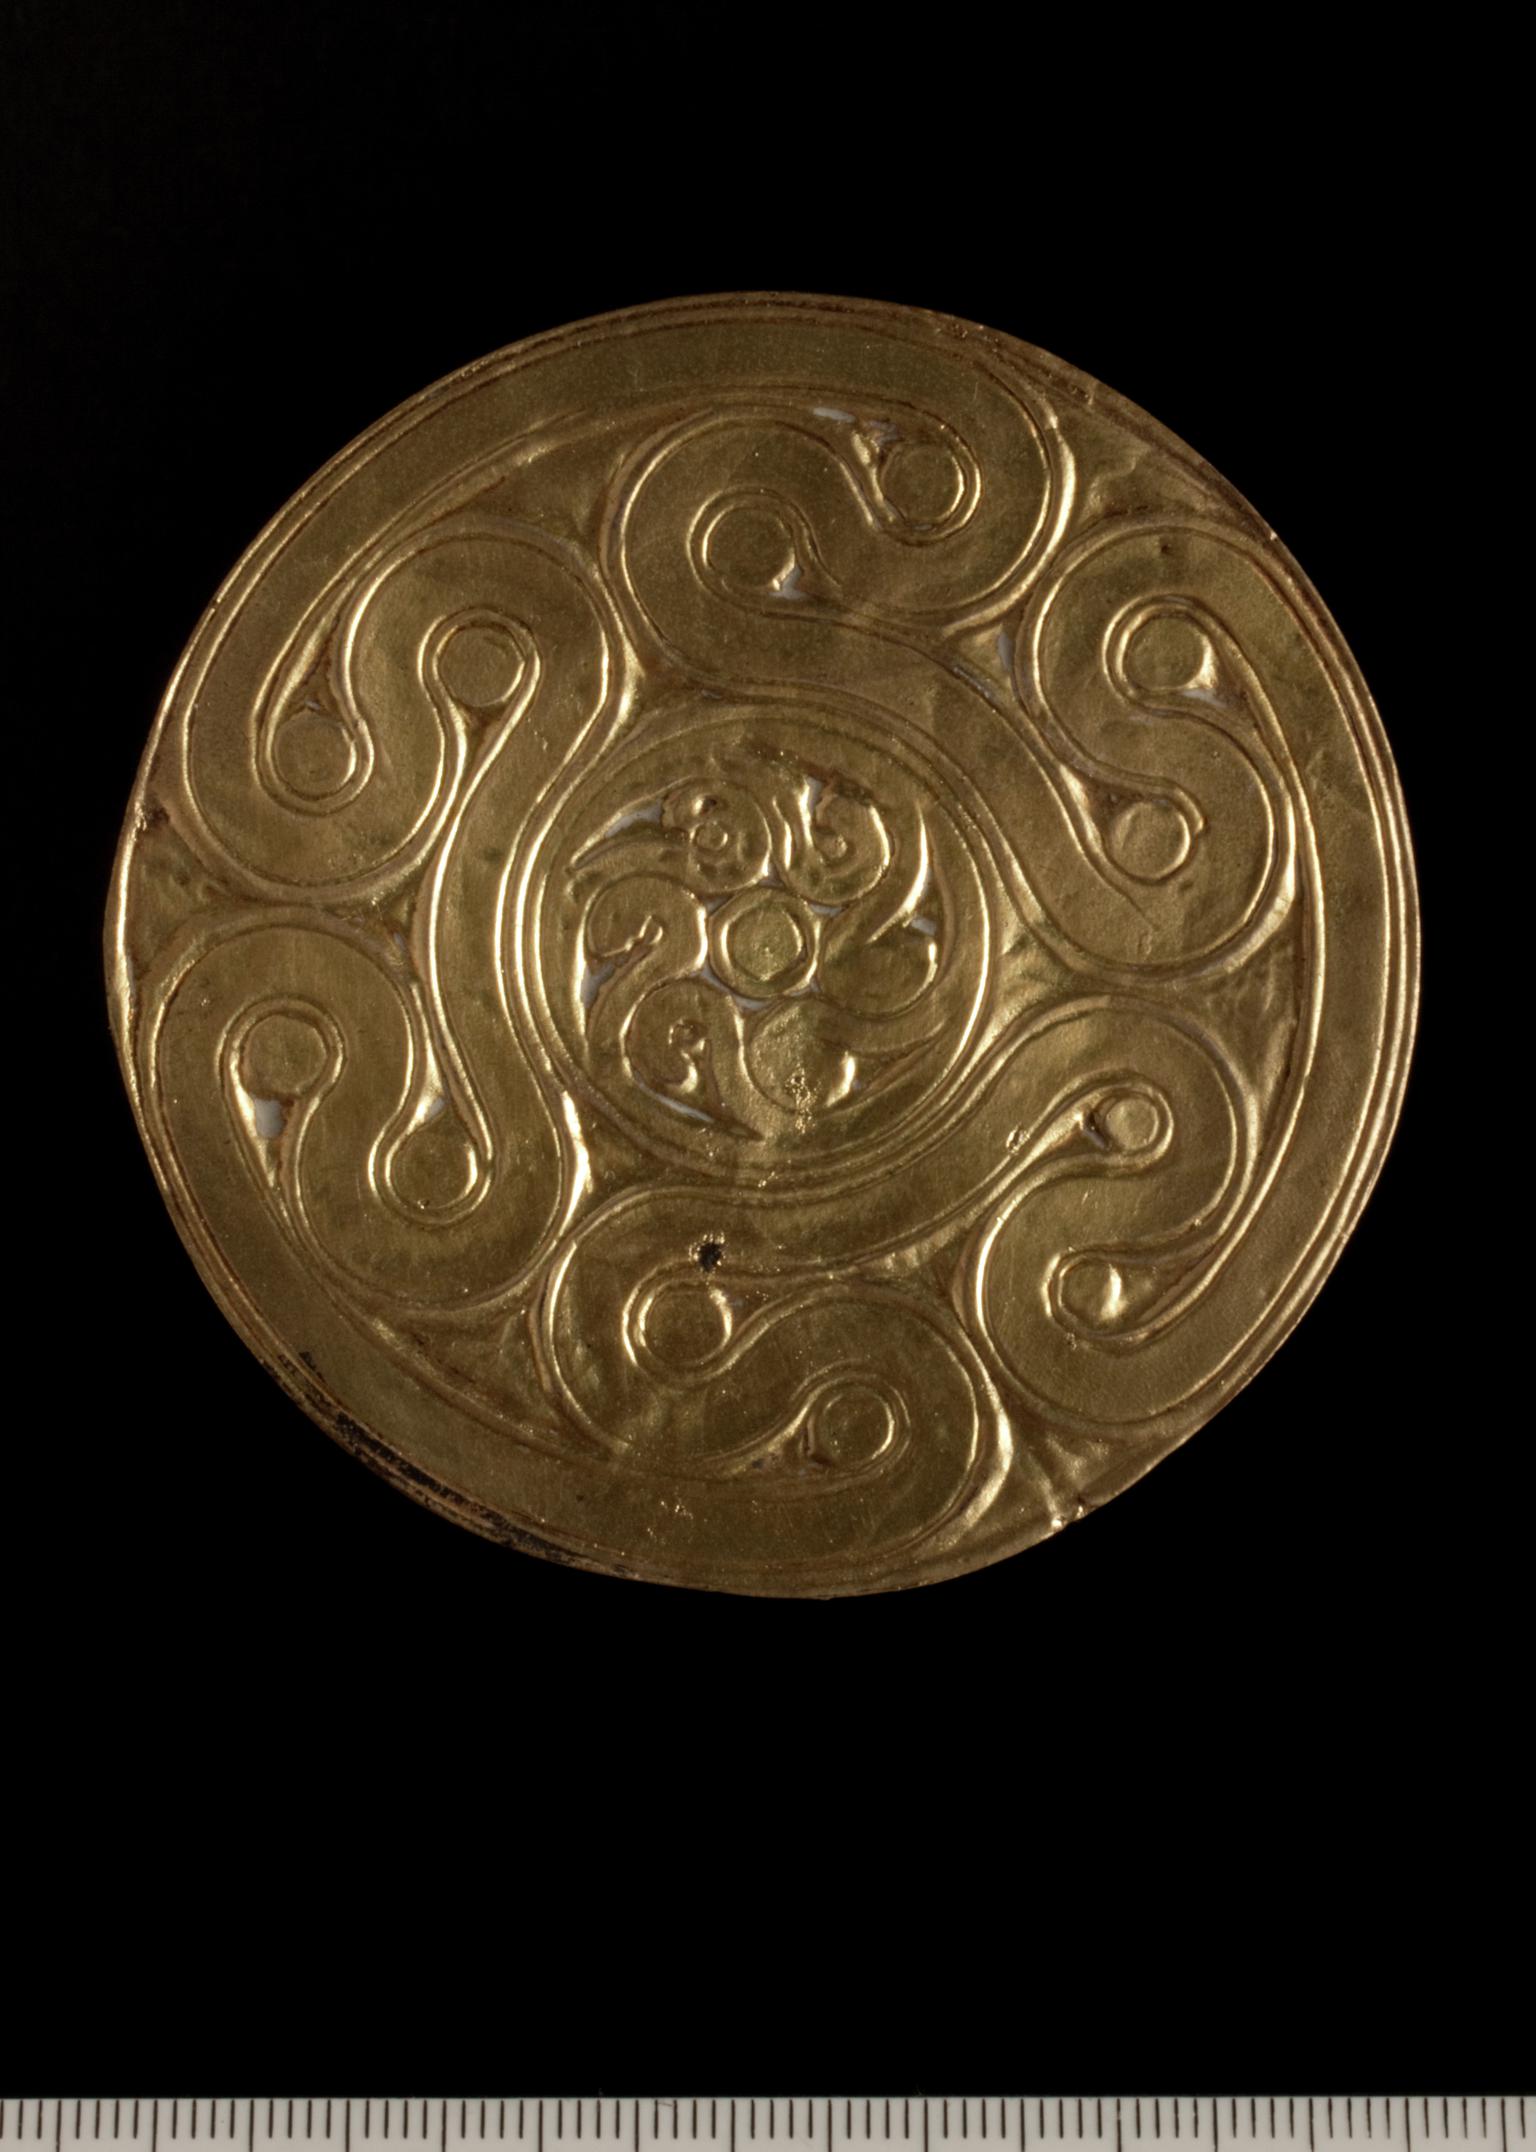 Mycenean gold motif (Replica)